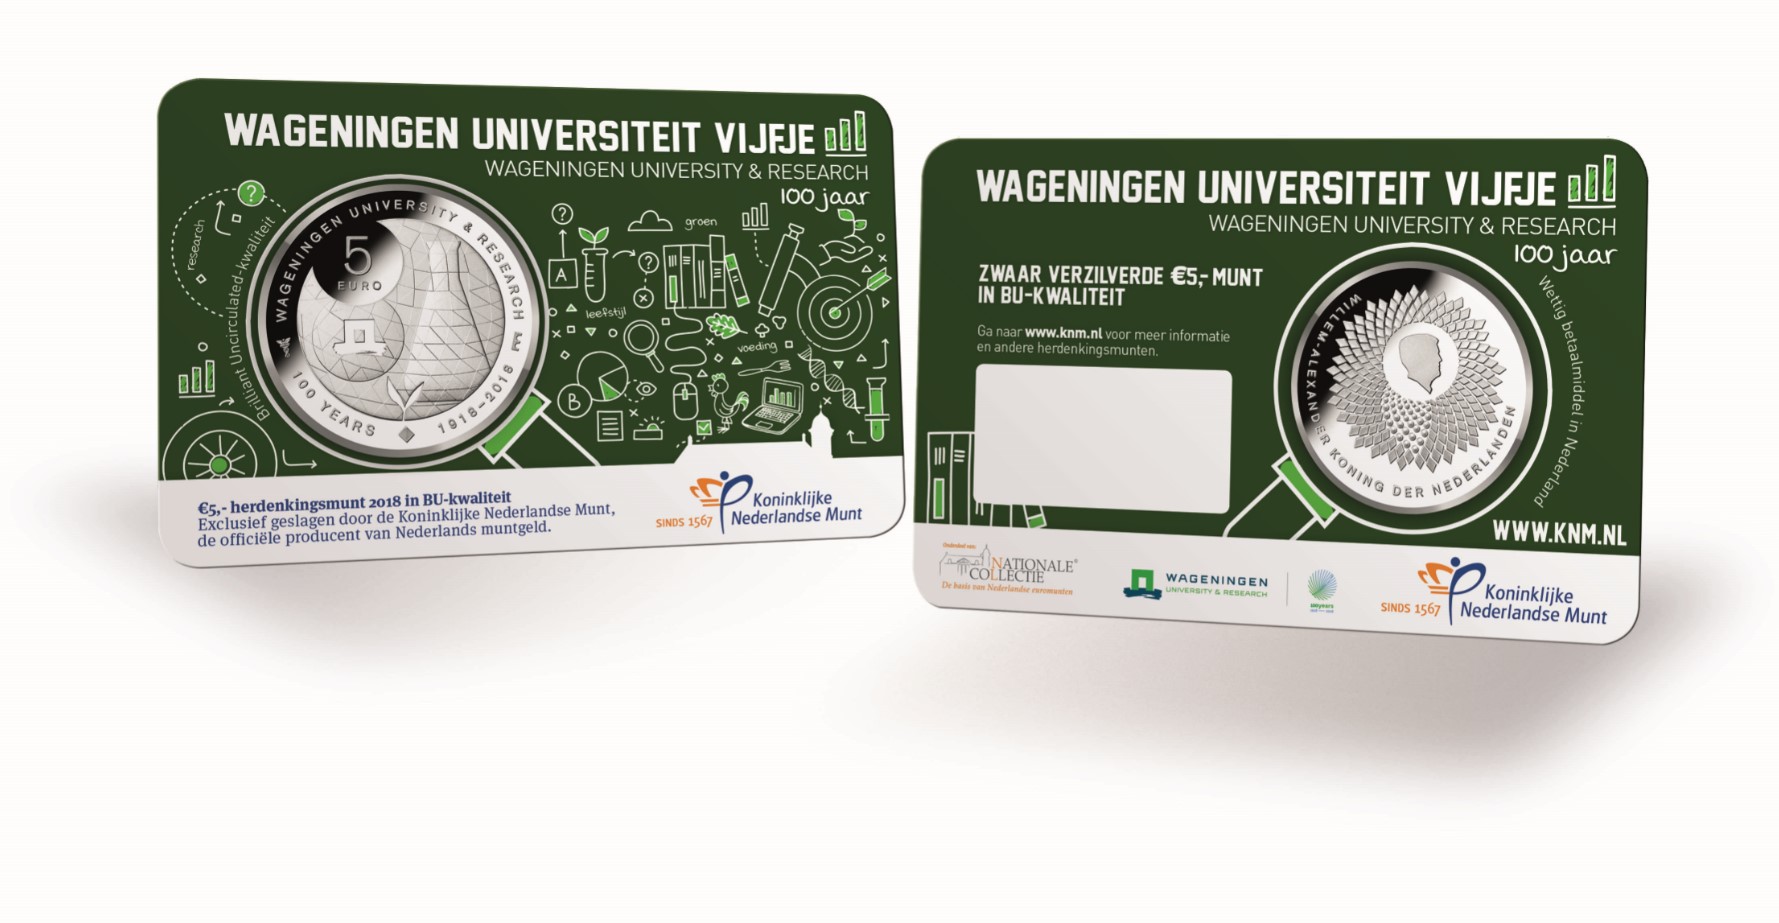 Wageningen Universiteit Vijfje 2018 Coincard in BU-kwaliteit